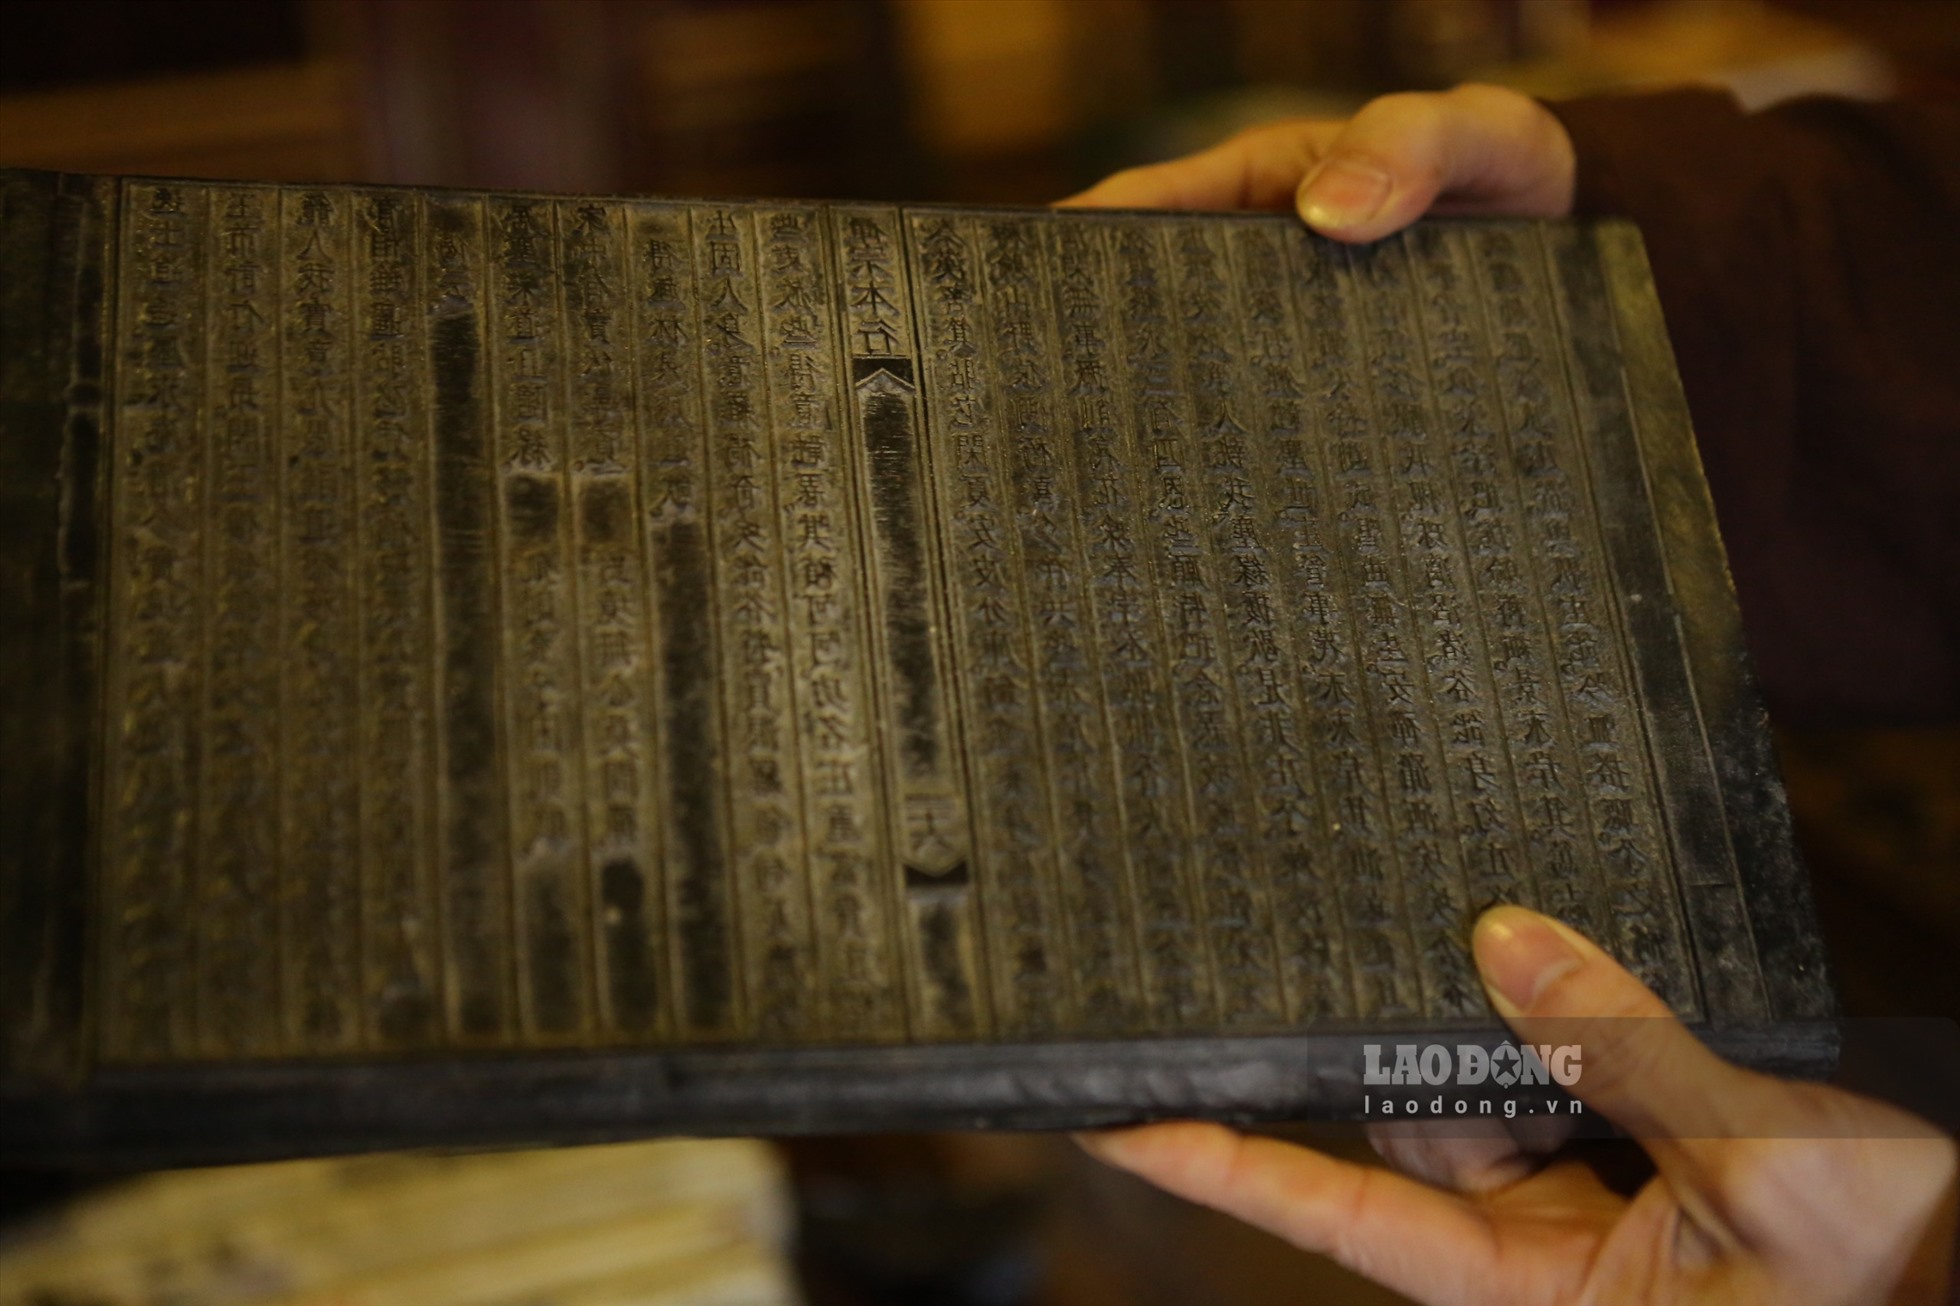 Mộc bản chùa Vĩnh Nghiêm là những bản gỗ khắc chữ Hán và chữ Nôm với kĩ thuật khắc ngược dùng để in ra thành sách. Mỗi tấm Mộc bản kinh gồm có hai mặt, mỗi mặt khắc tương ứng với 2 trang sách.